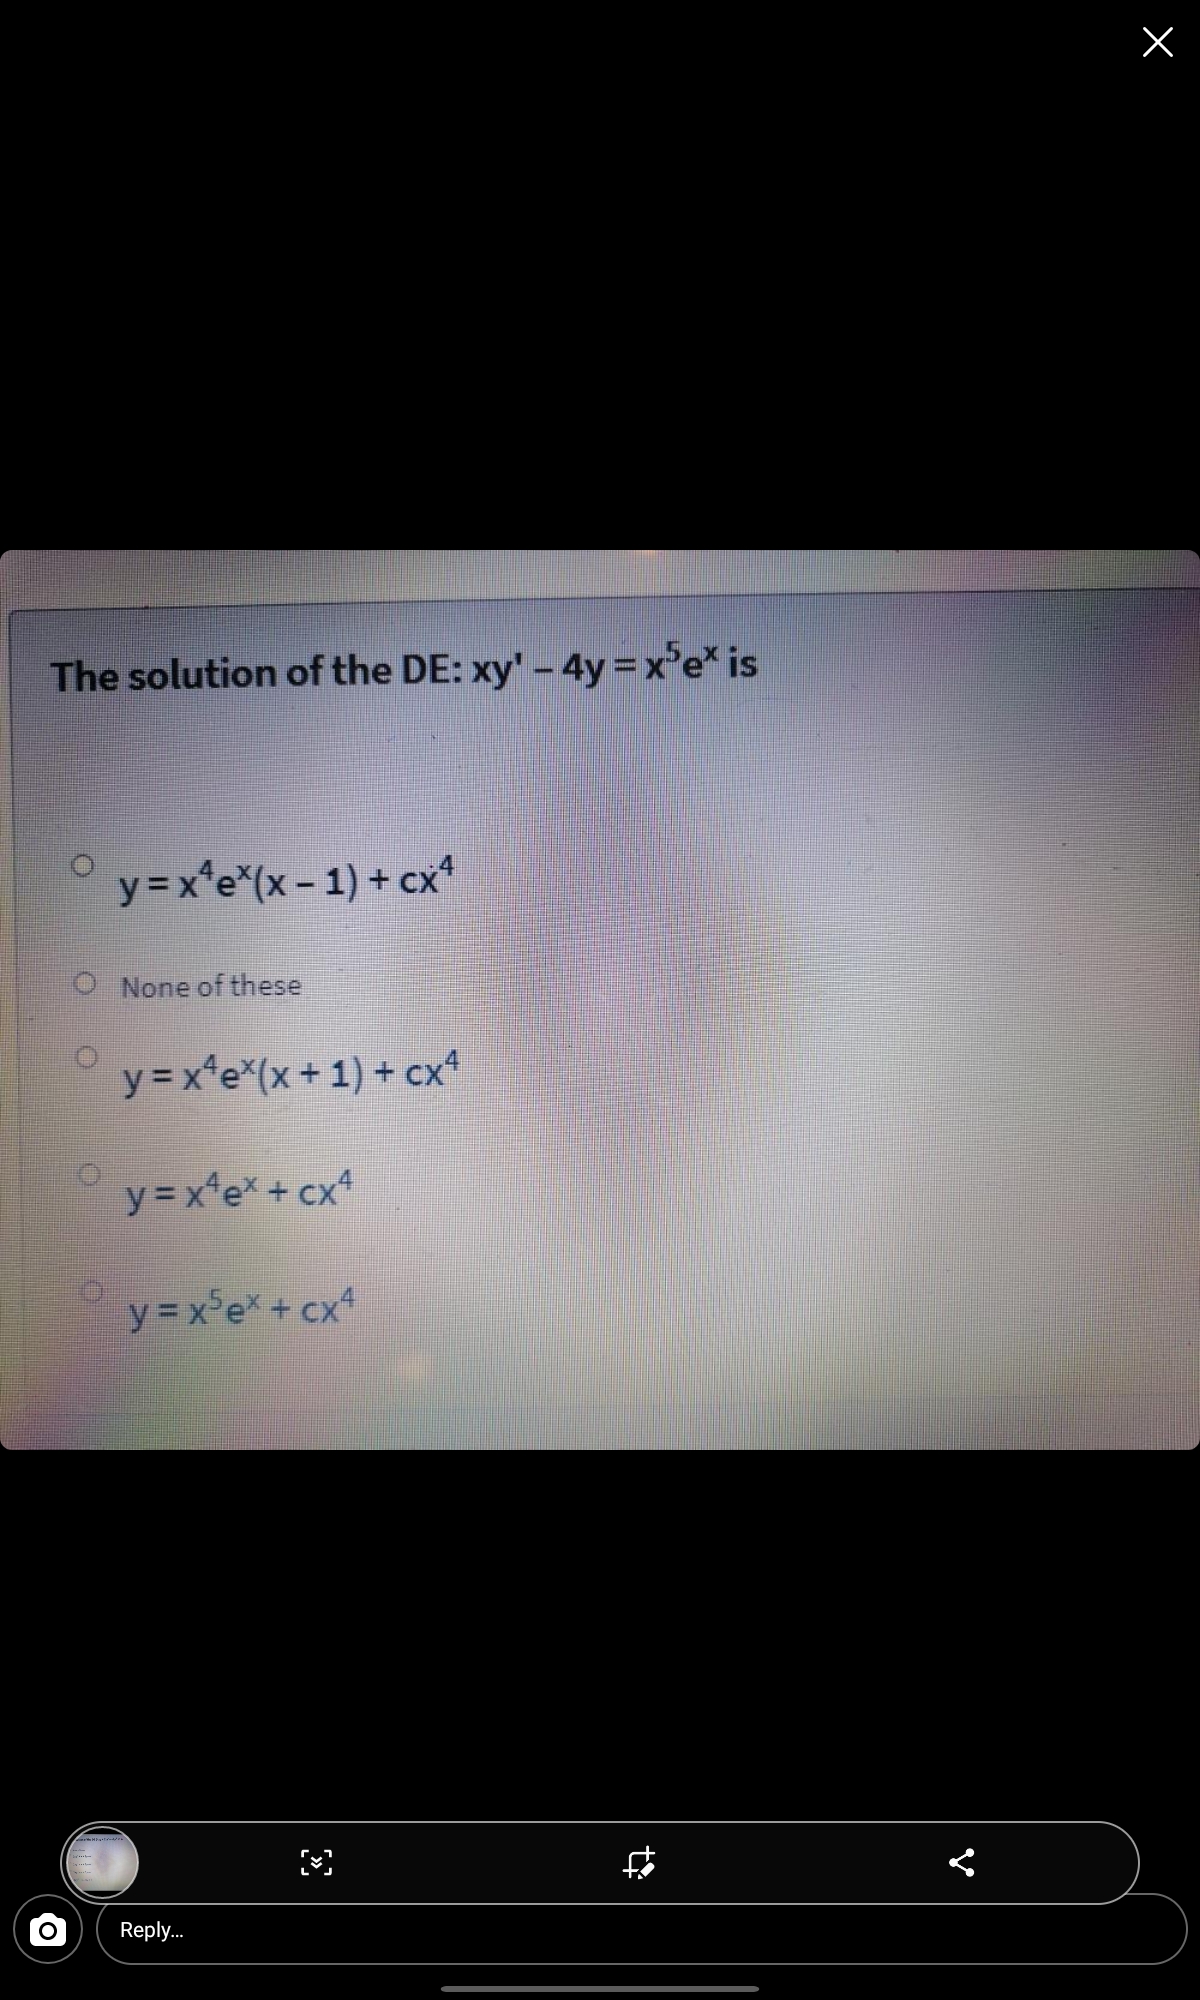 The solution of the DE: xy'-4y=x'e* is
y=x*e*(x - 1) + cx*
O None of these
y = x*e*(x+1) + cx*
y = x*e* + cx*
y = x°e* + cx*
Reply..
